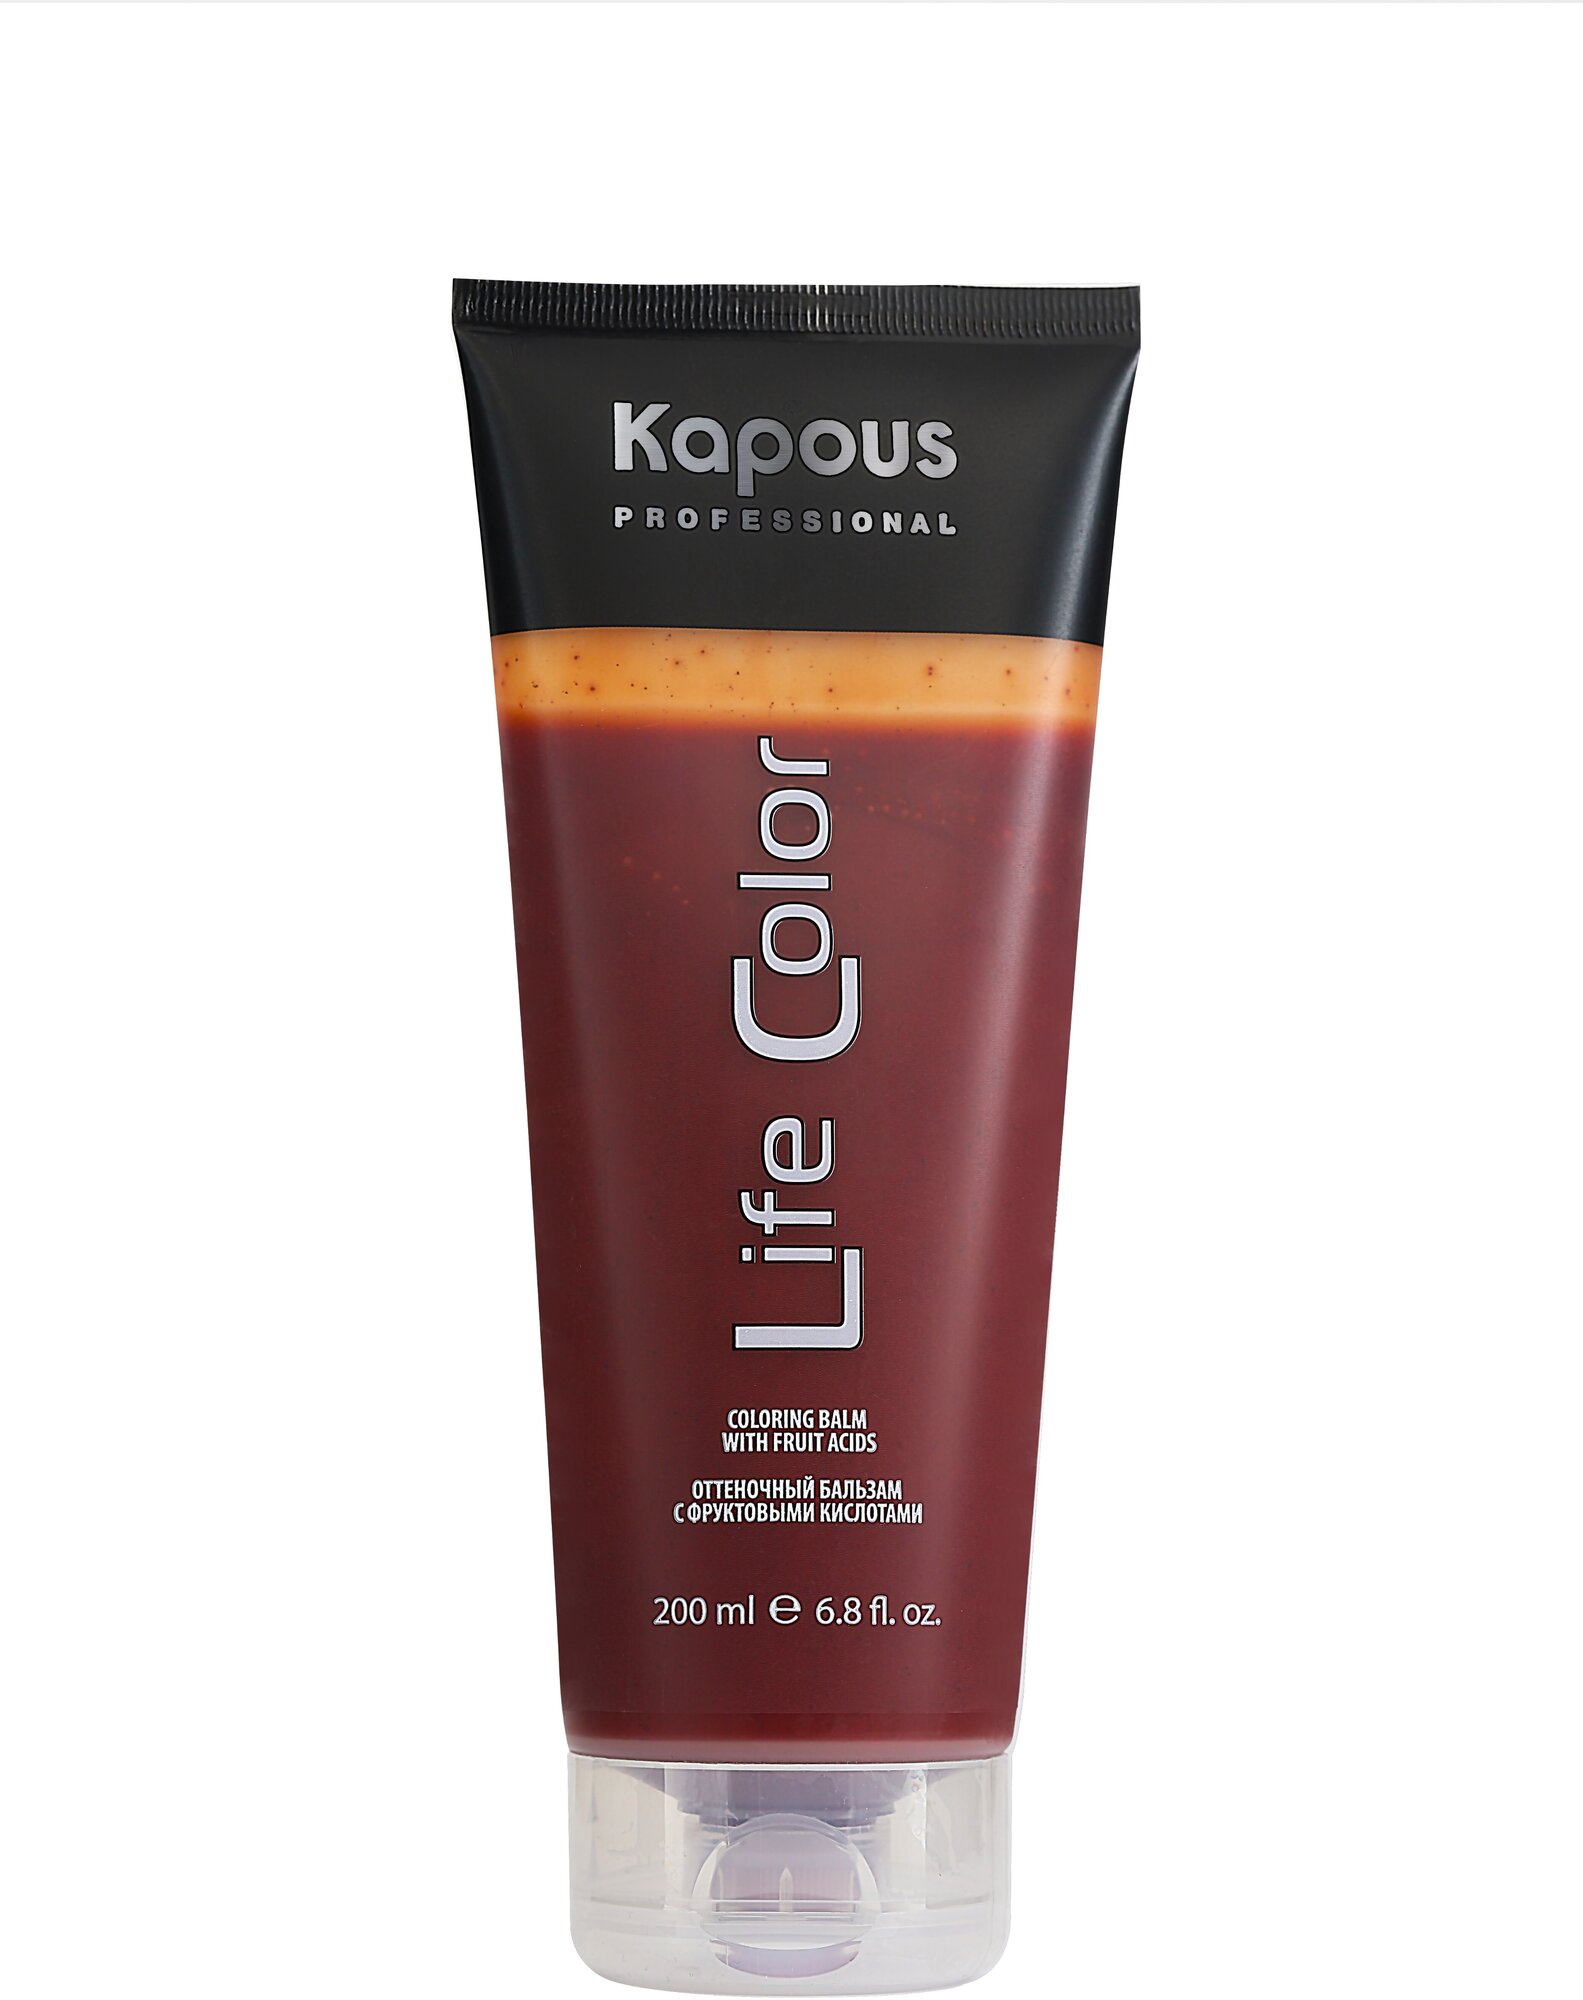 Kapous Professional Бальзам оттеночный для волос Life Color Медный 200 мл (Kapous Professional) - фото №9